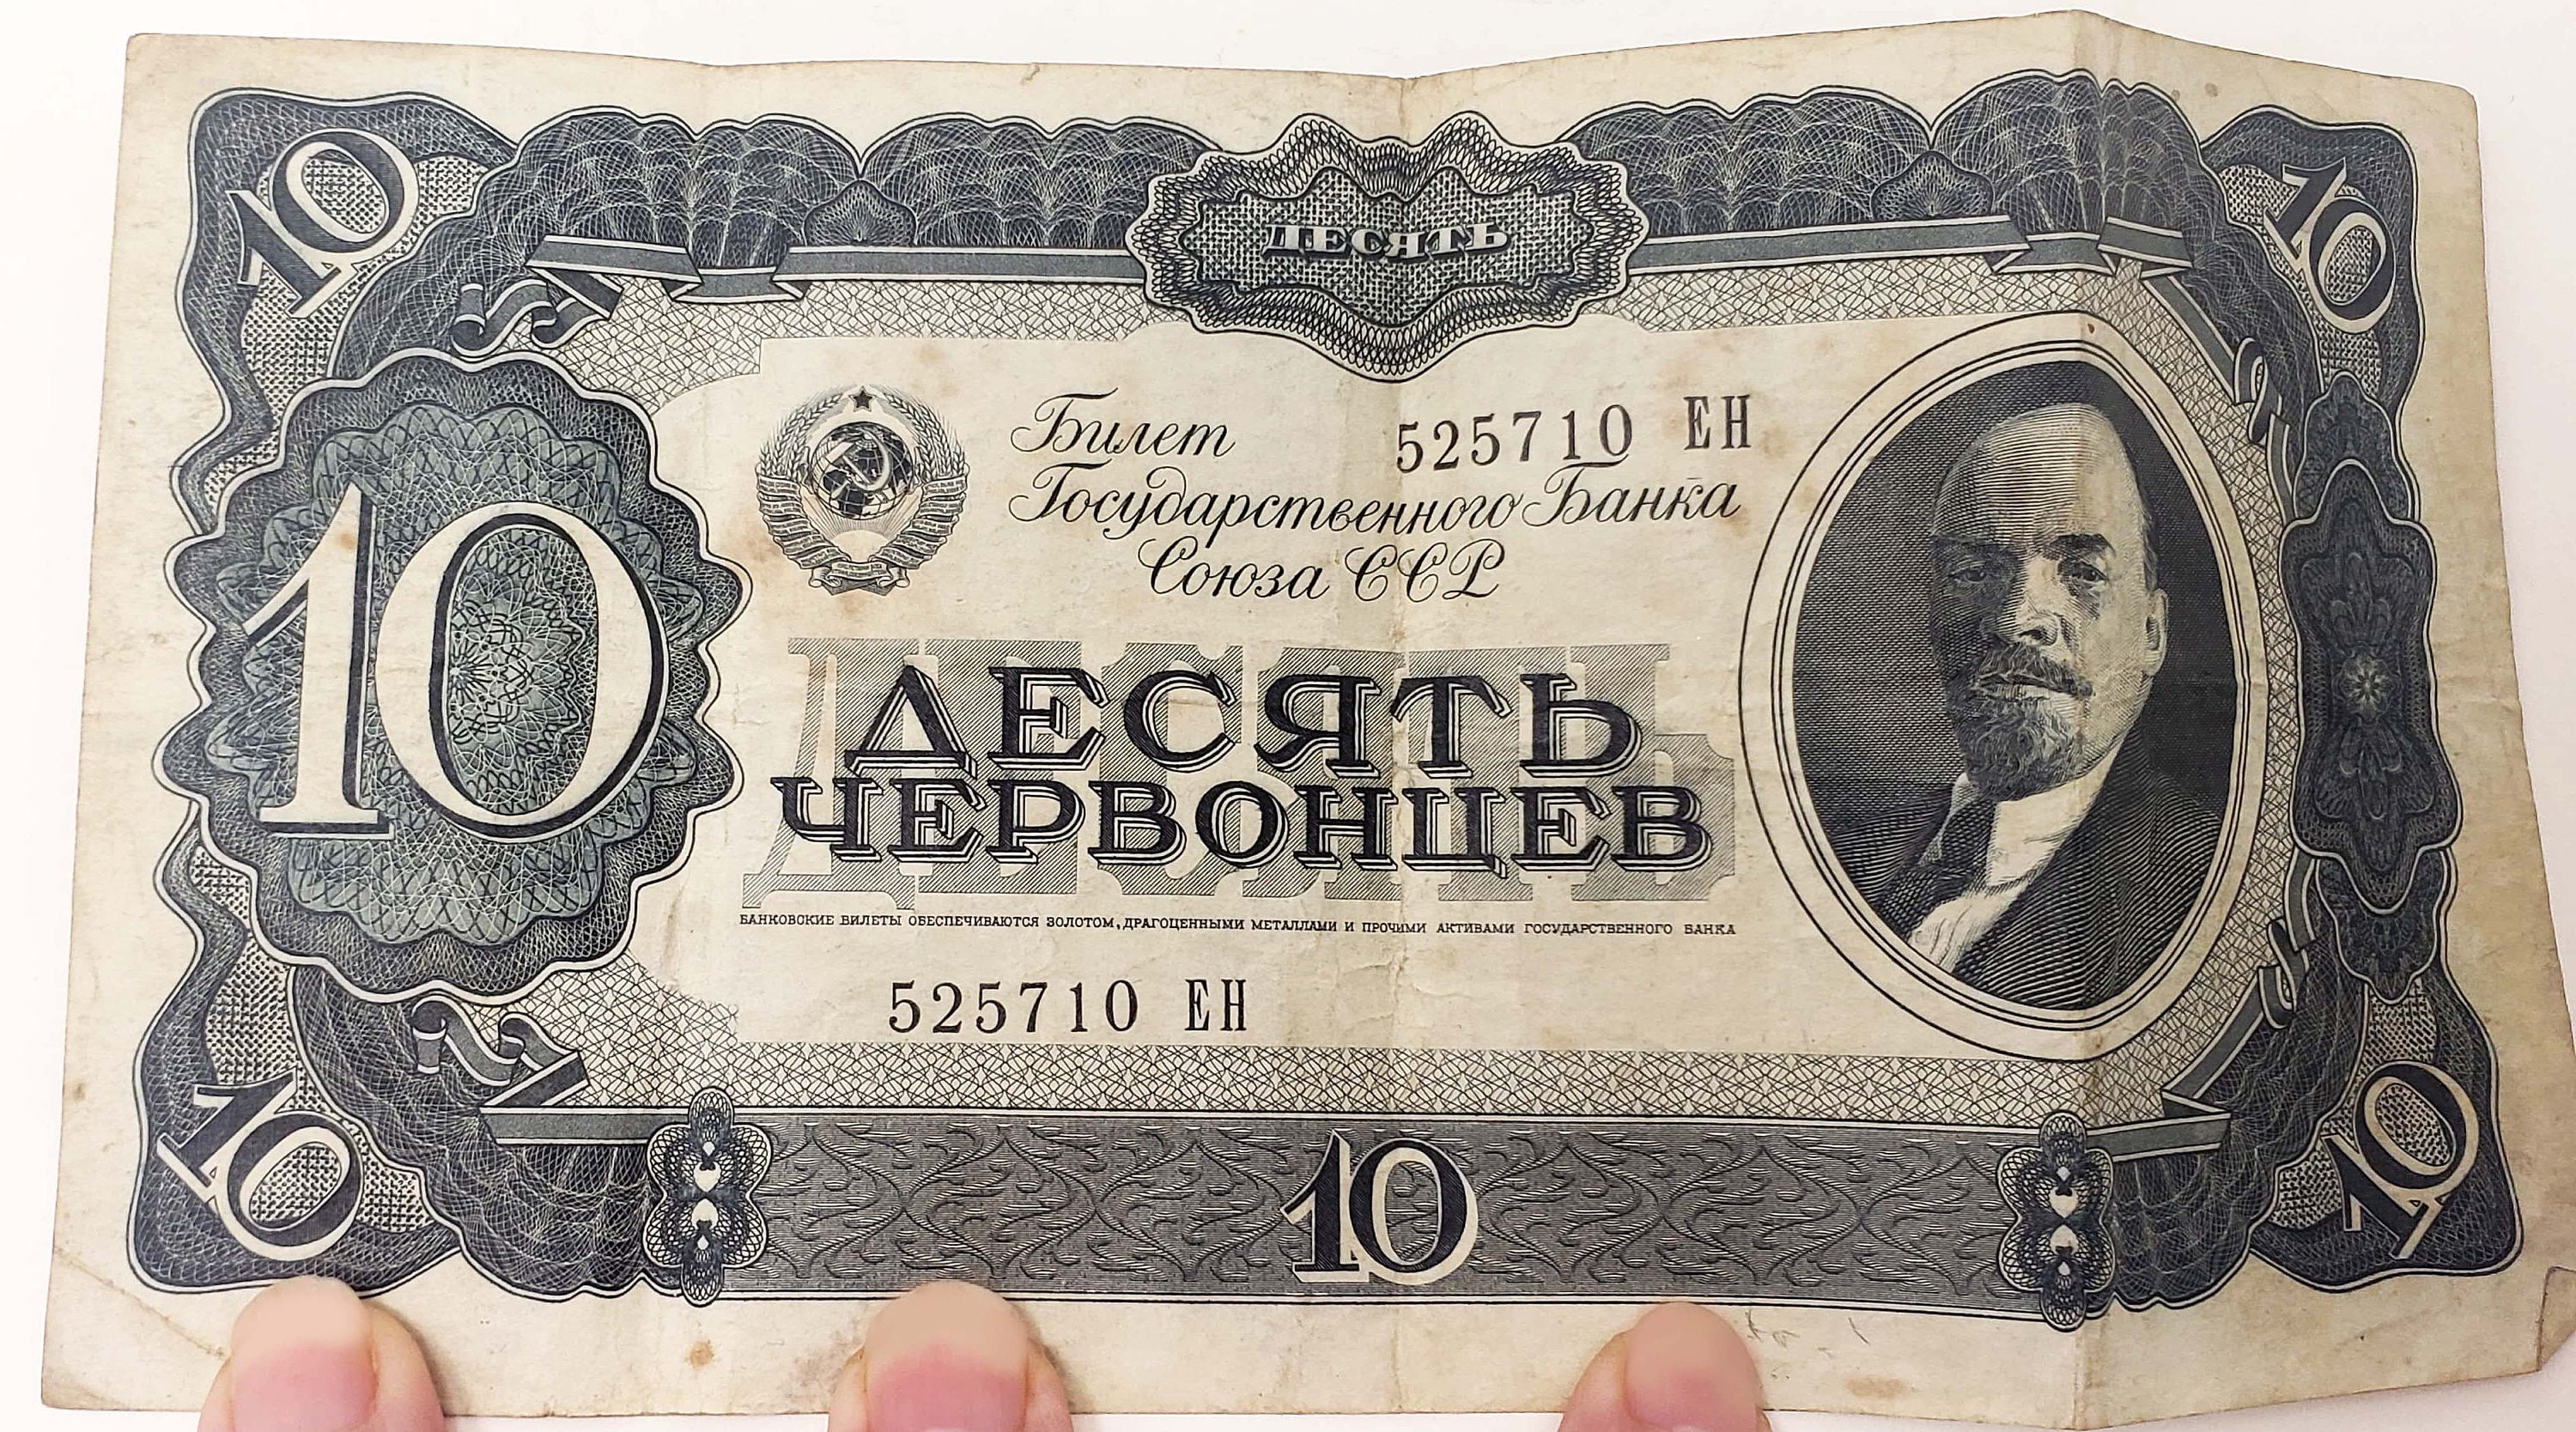 Russisches Kriegssymbol: Geldstrafe wegen Z in Heckscheibe - ZDFheute